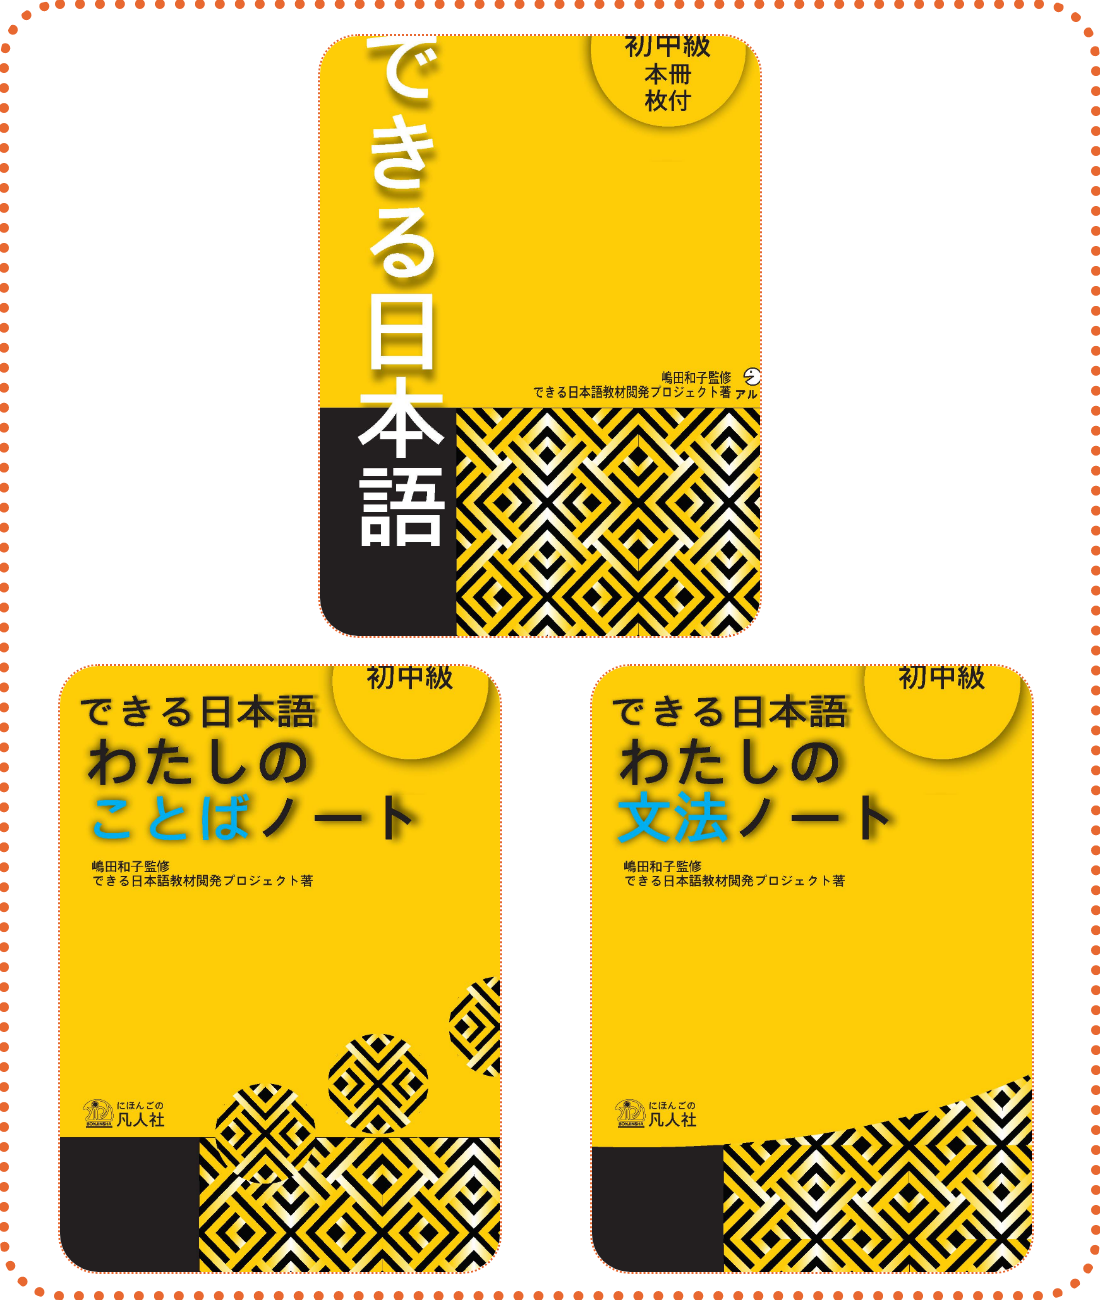 Lifestyle design[Tặng Kèm Bảng 214 Bộ Thủ] Bộ Sách Dekiru Nihongo Sơ Trung Cấp (3 Cuốn)